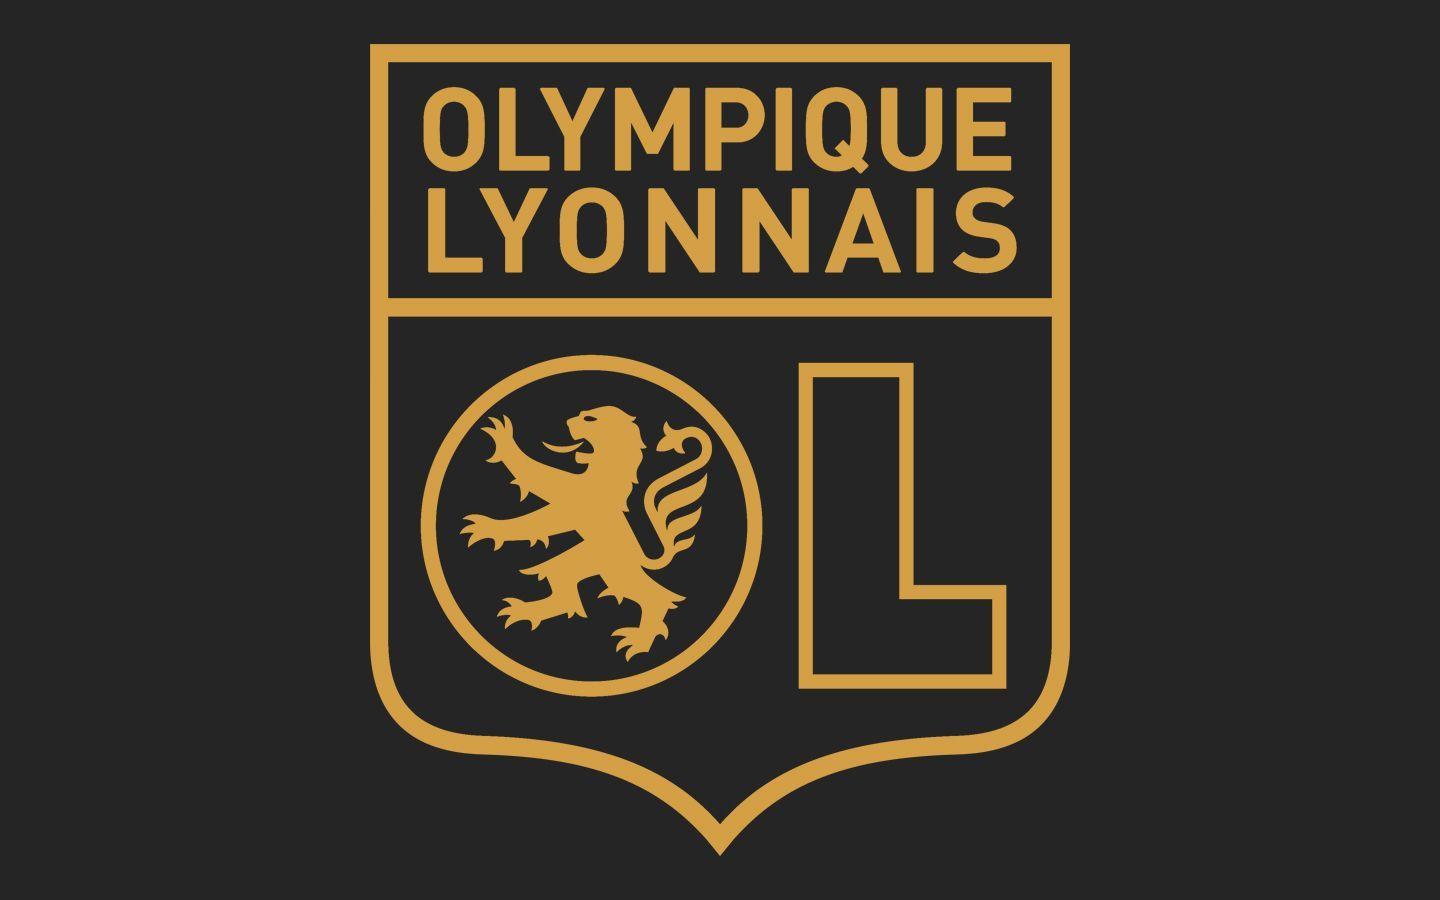 Olympique Lyonnais. Football Crests. Ol, Football